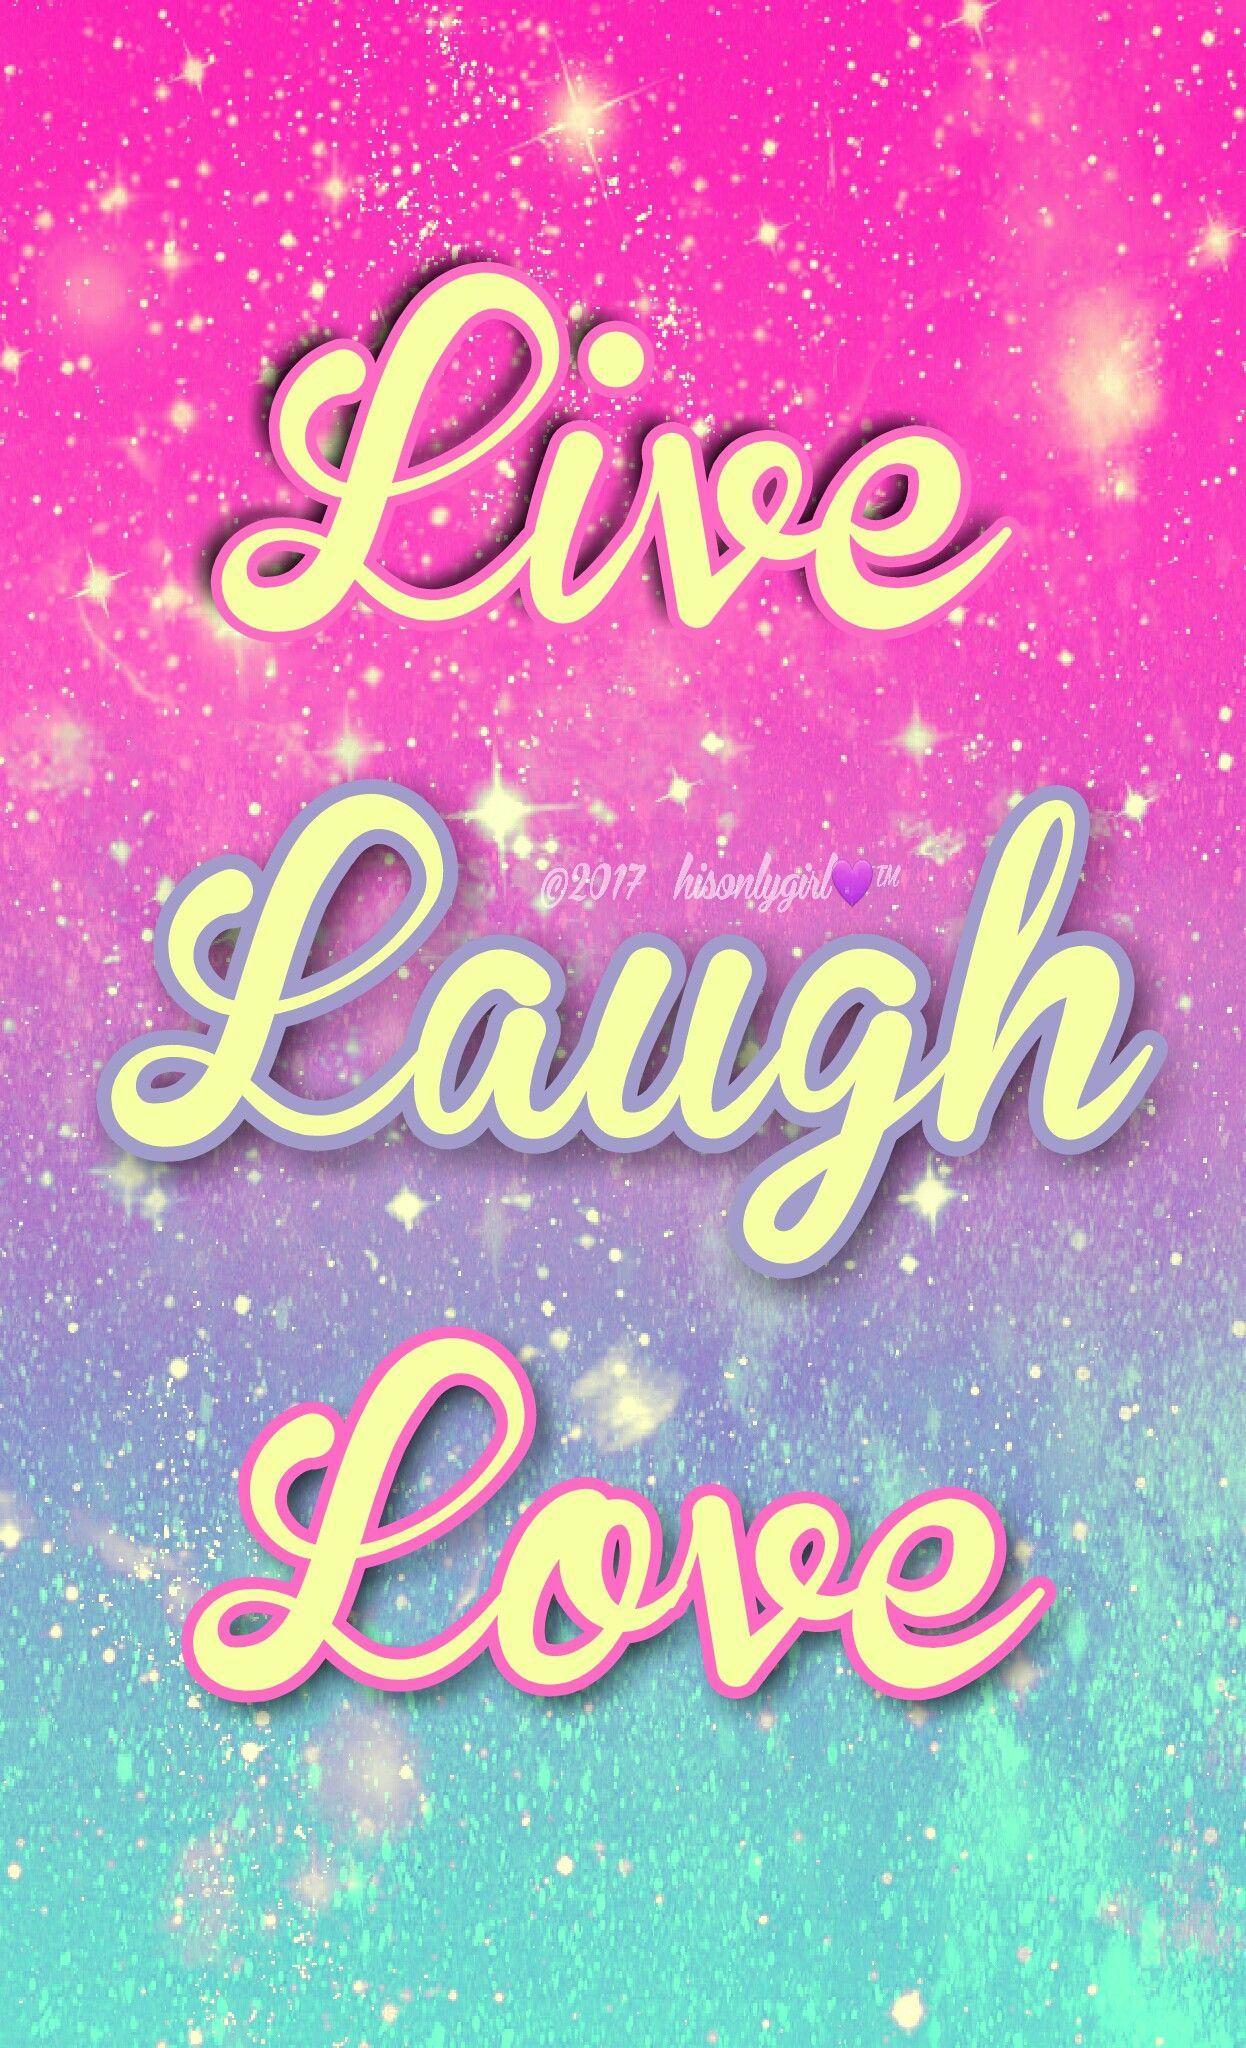 live laugh love desktop backgrounds